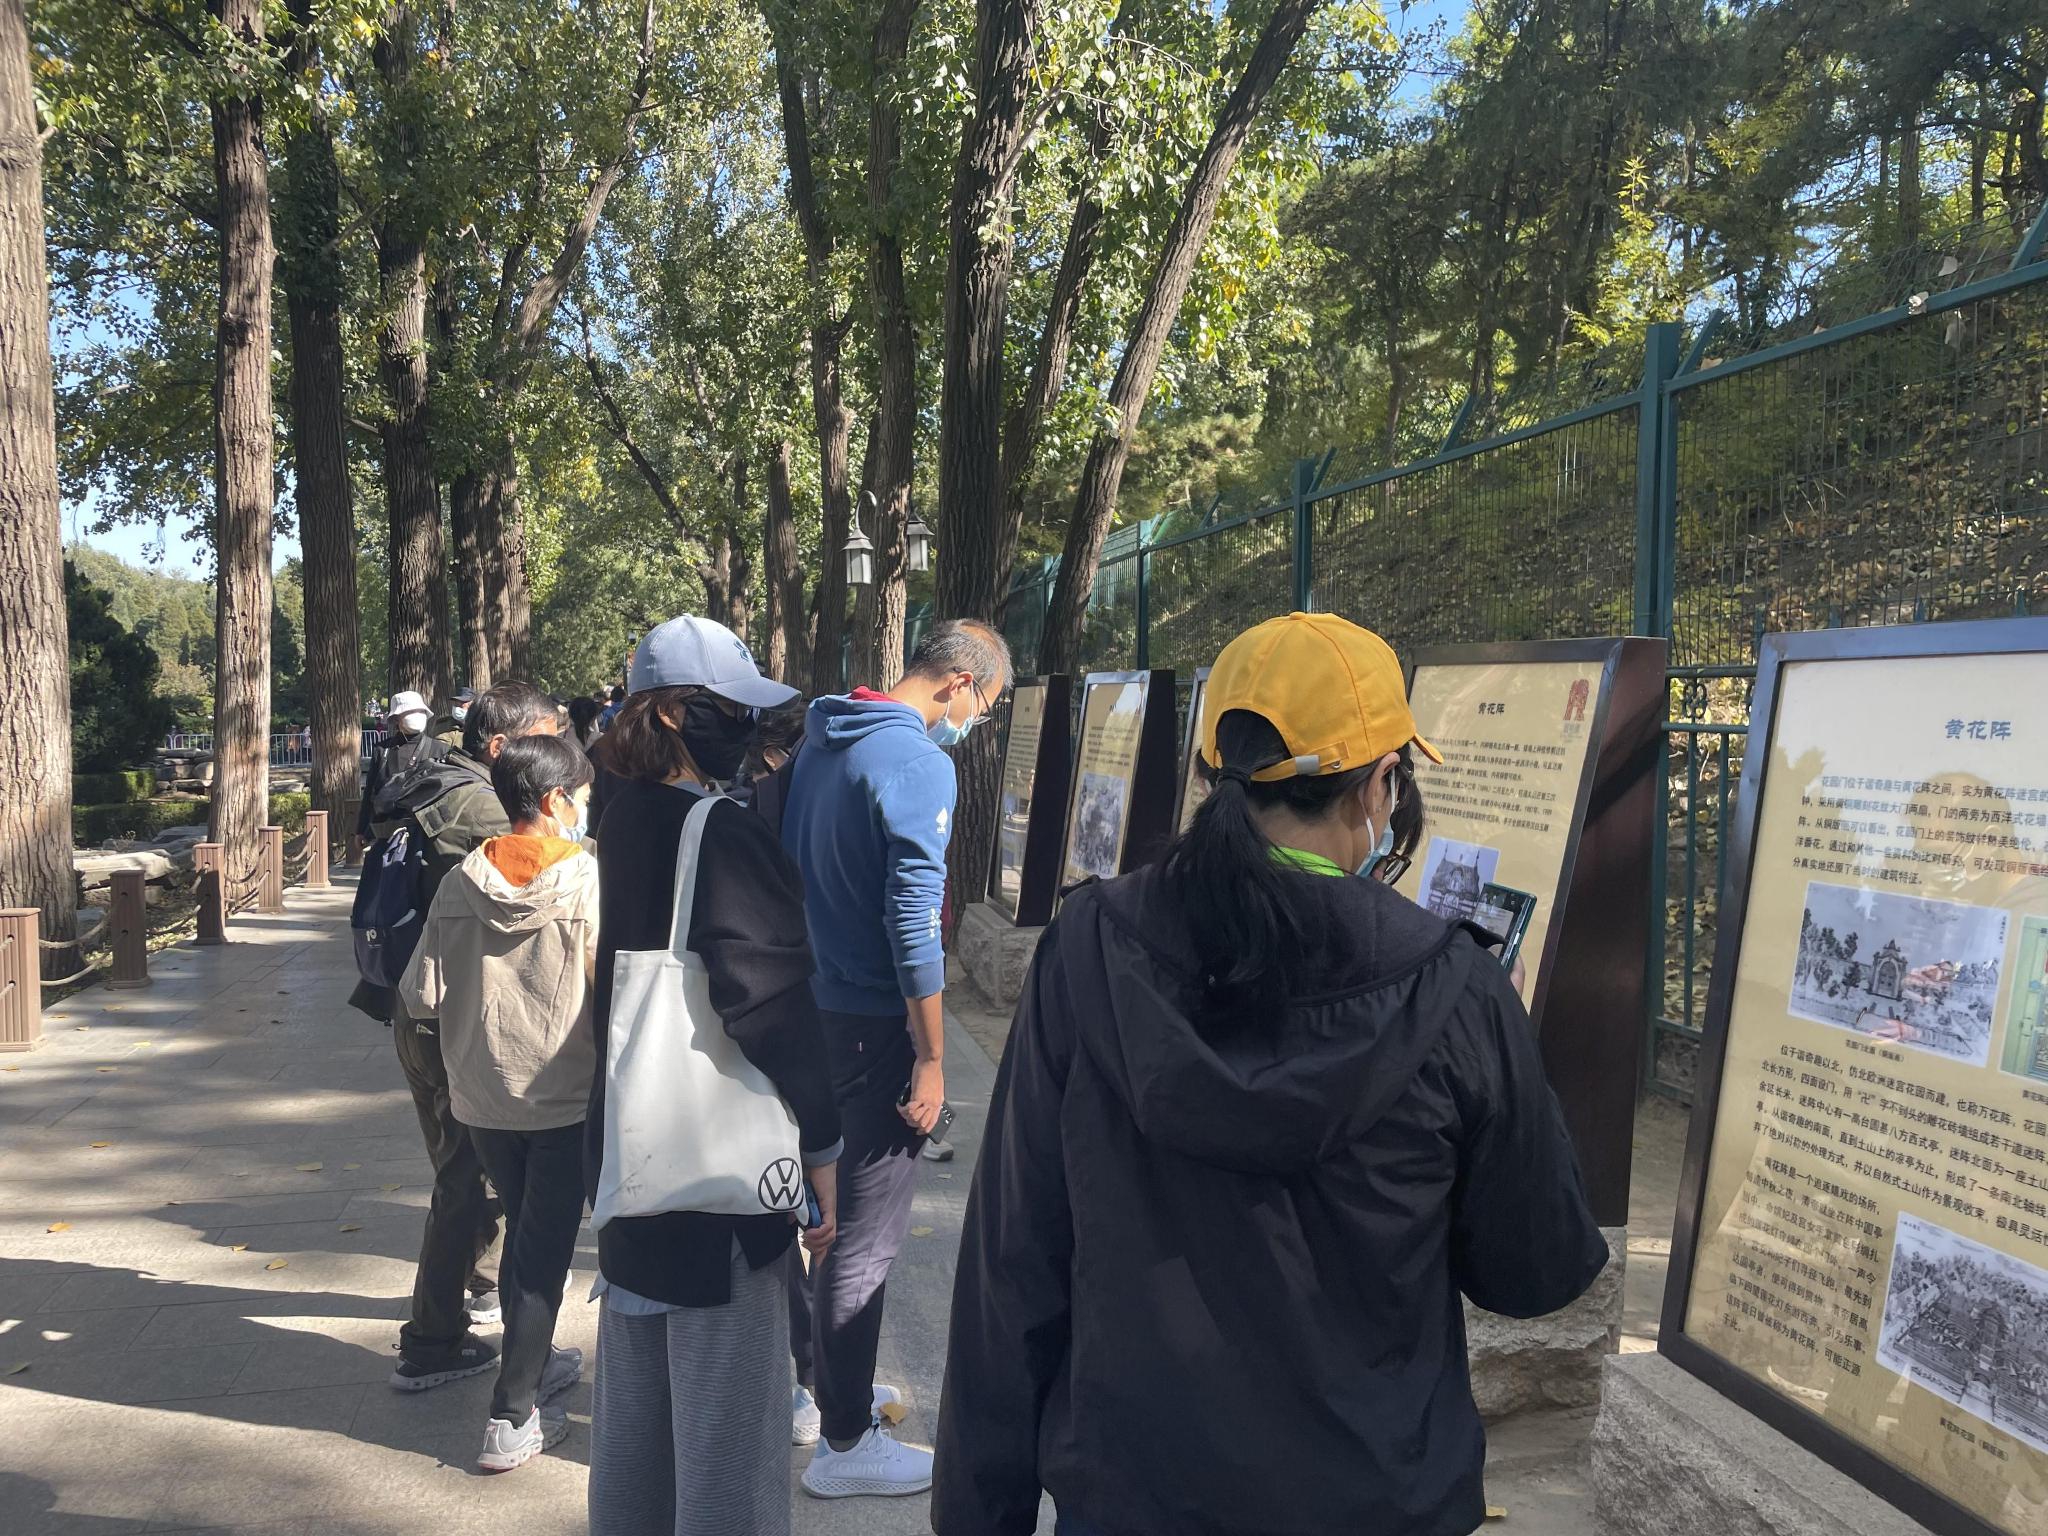 游客在讲解牌前驻足阅览。新京报记者左琳 摄